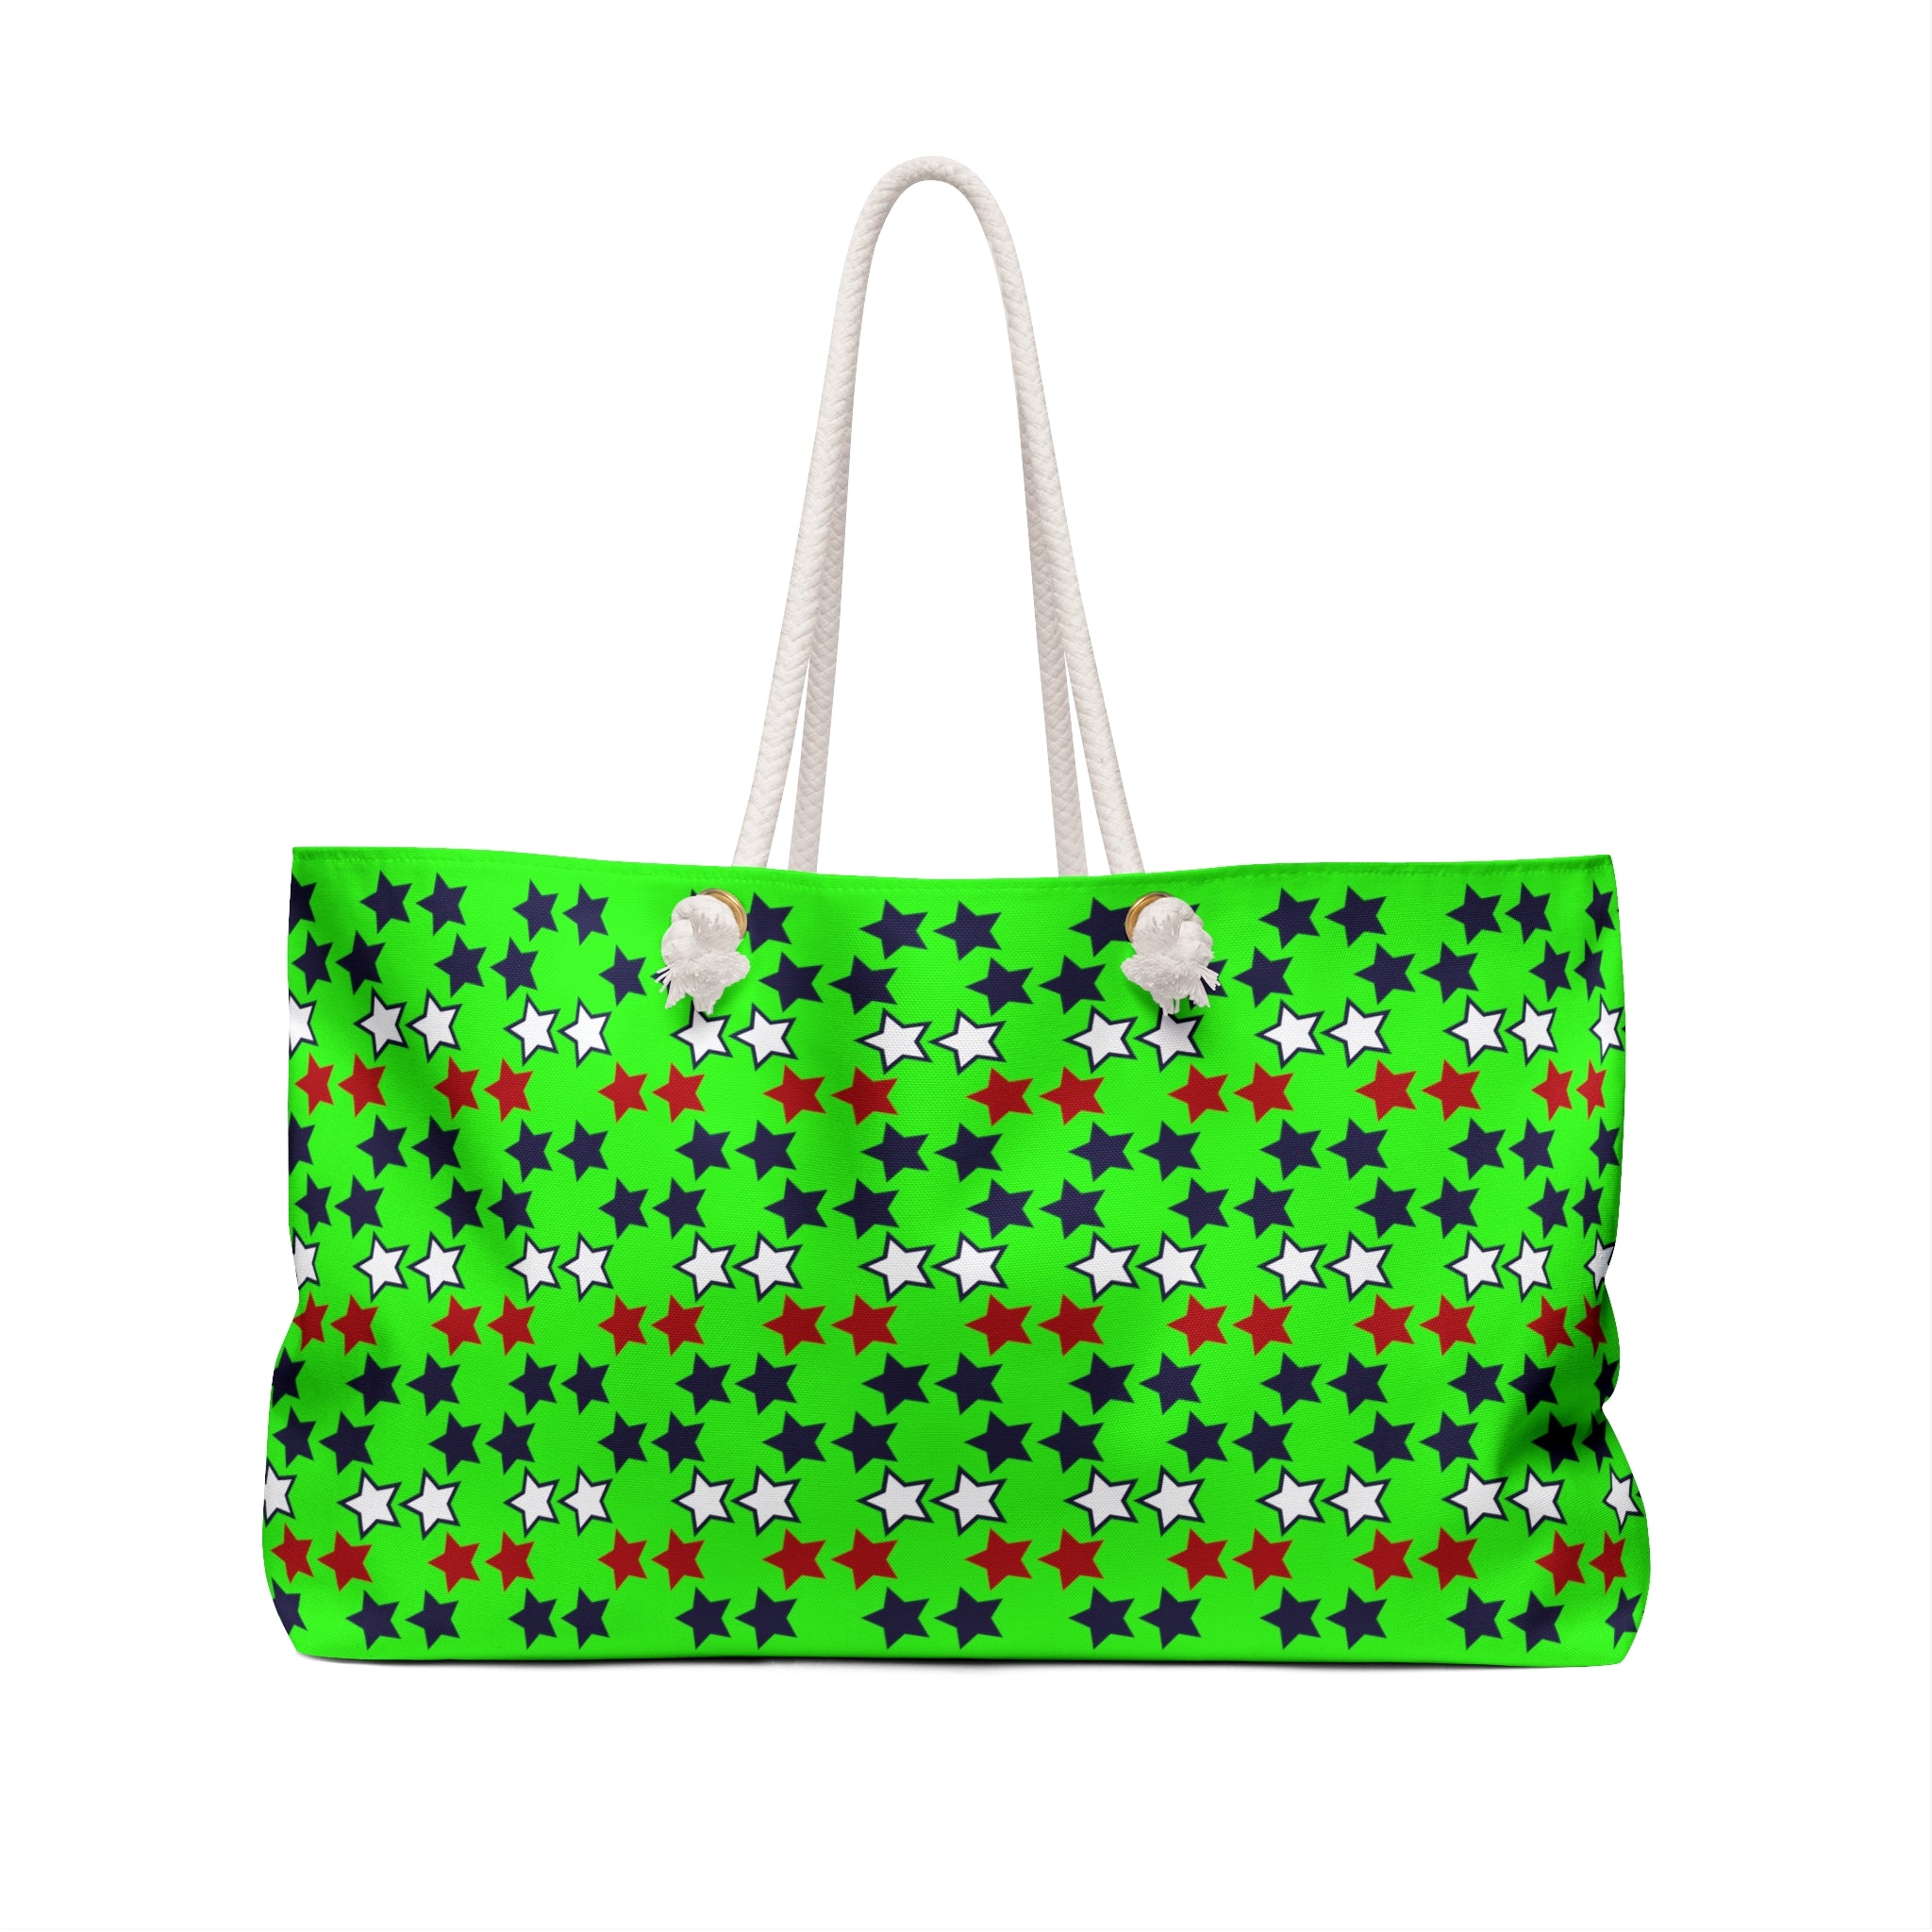 Neon Green Starry Weekender Tote Bag